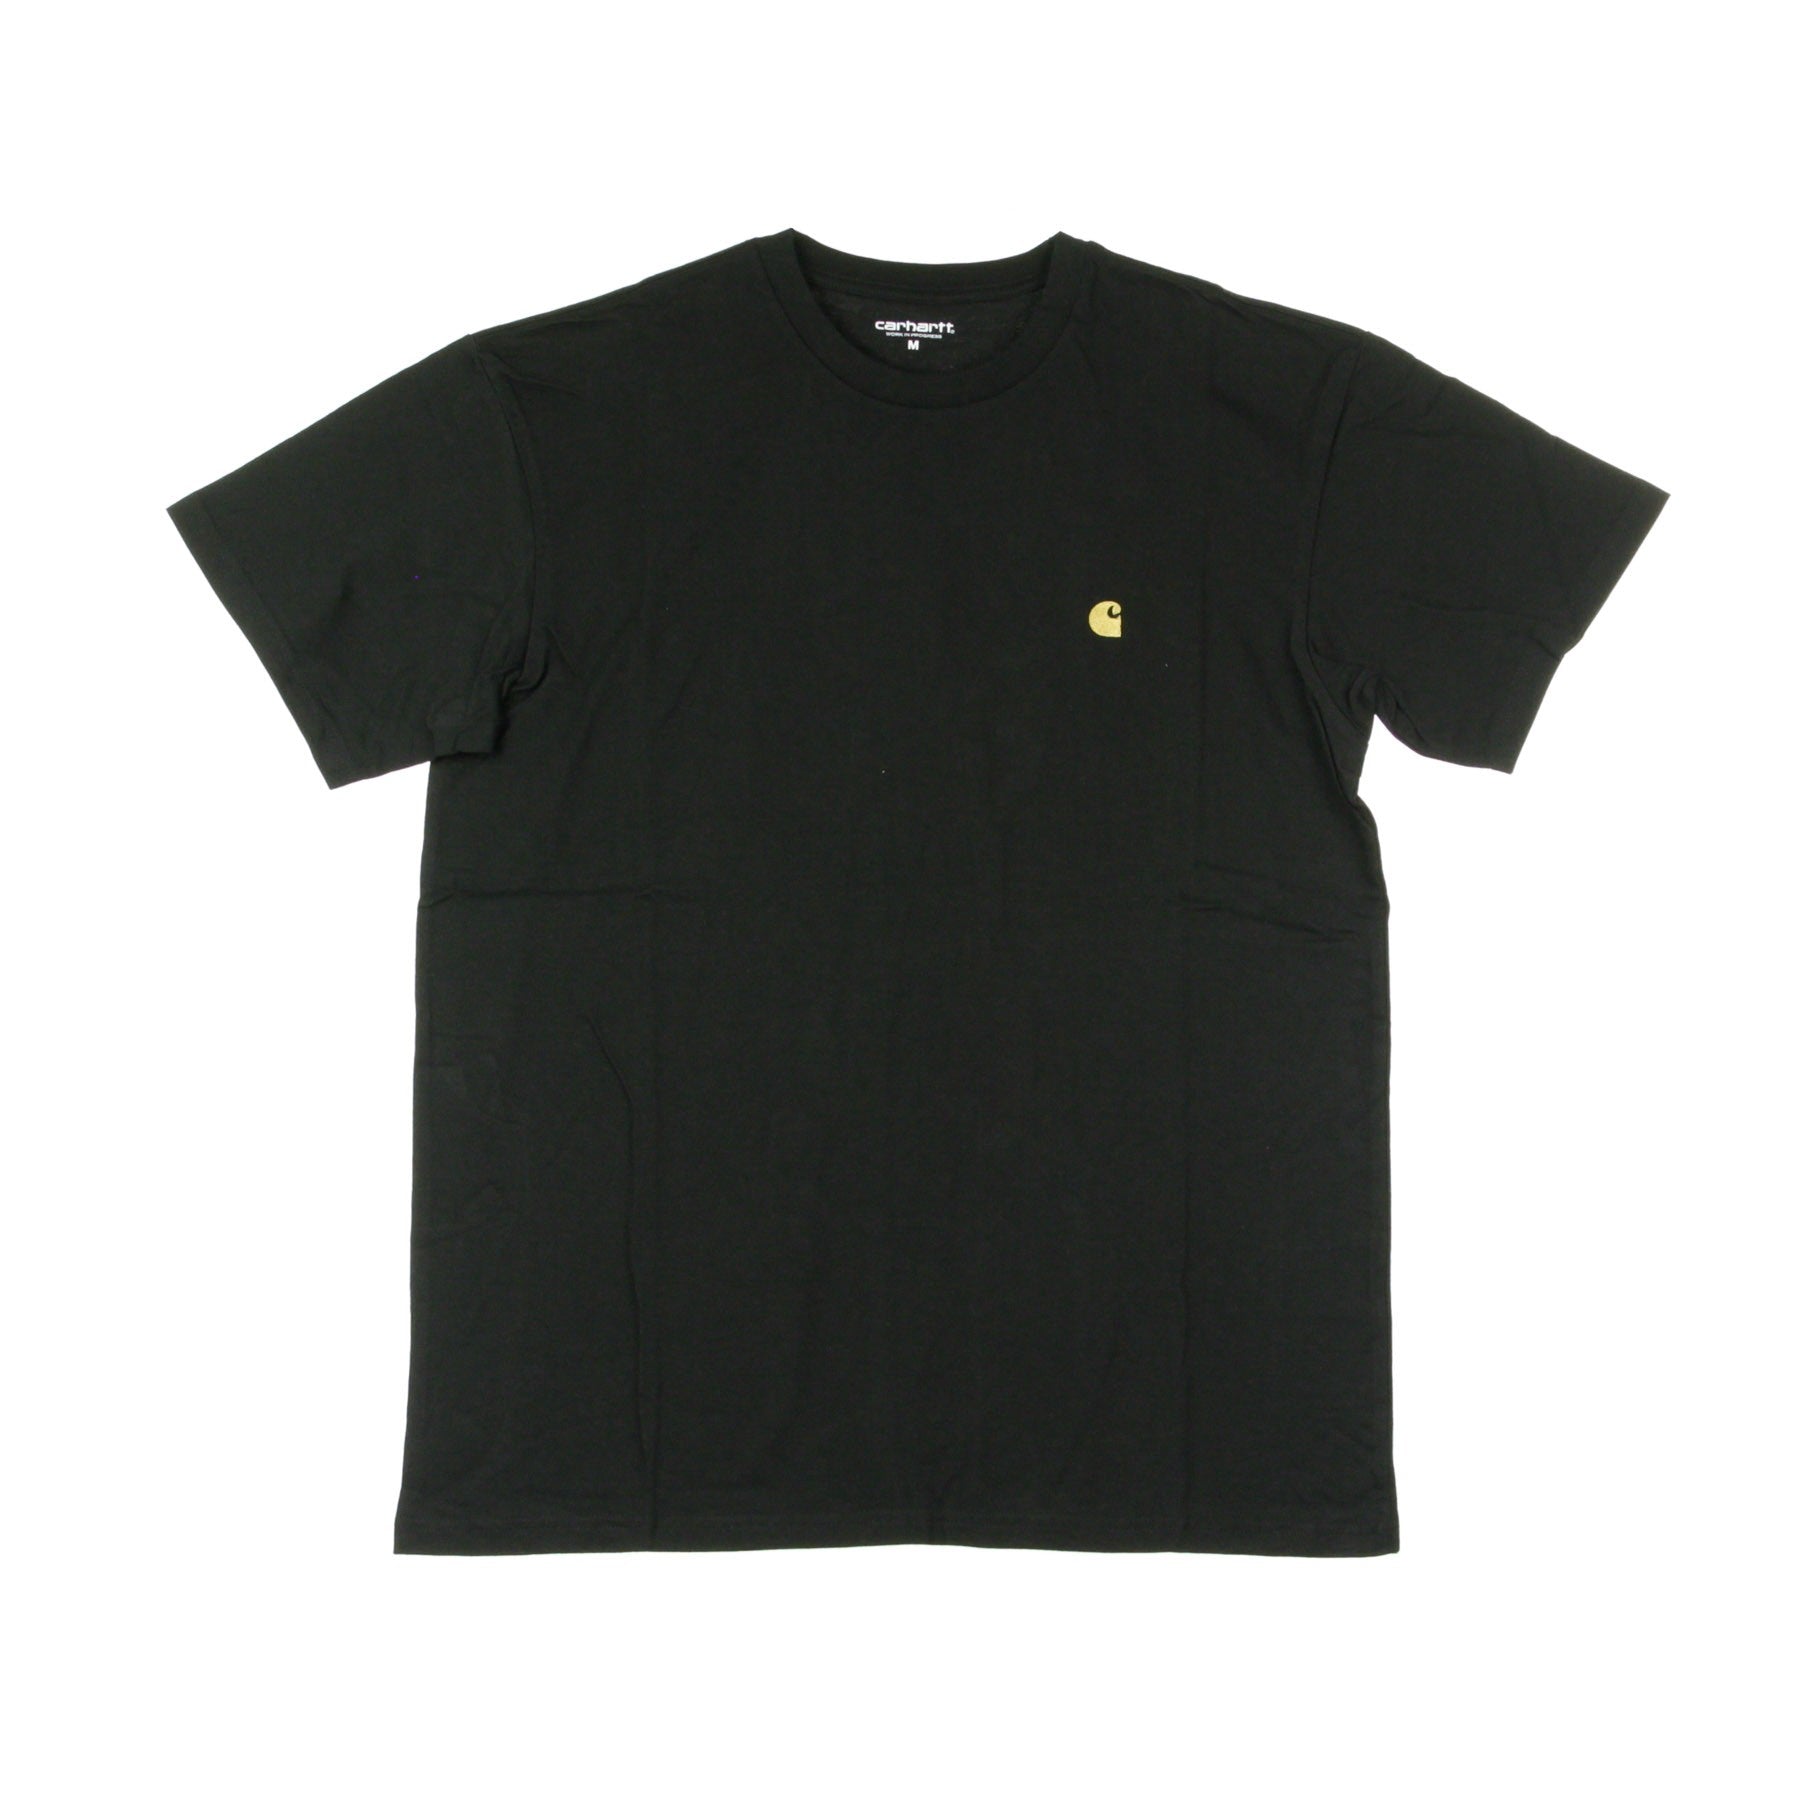 Maglietta Uomo Chase T-shirt Black/gold I026391